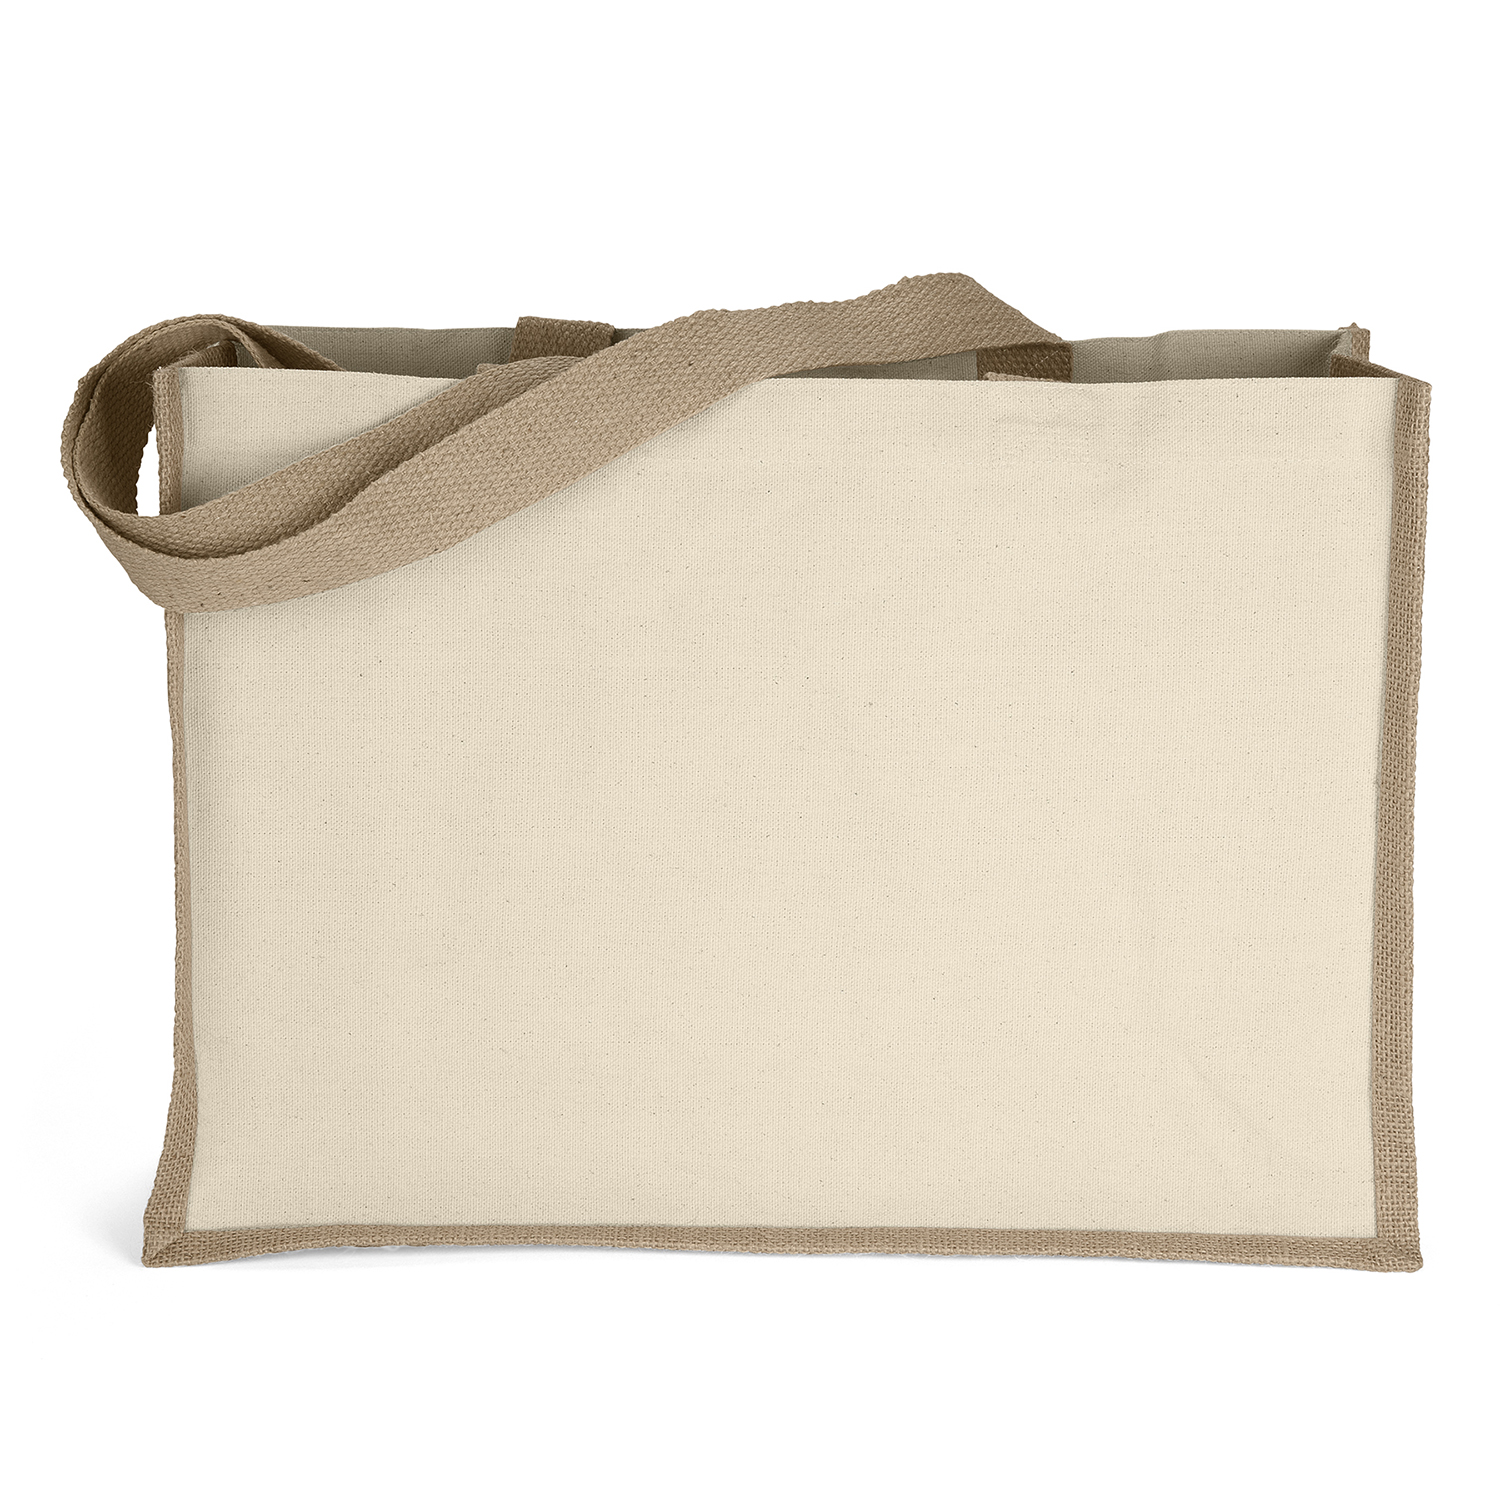 Bag Makers 40JO1712 - Custom Printed Reusable Laminated Tote Bag